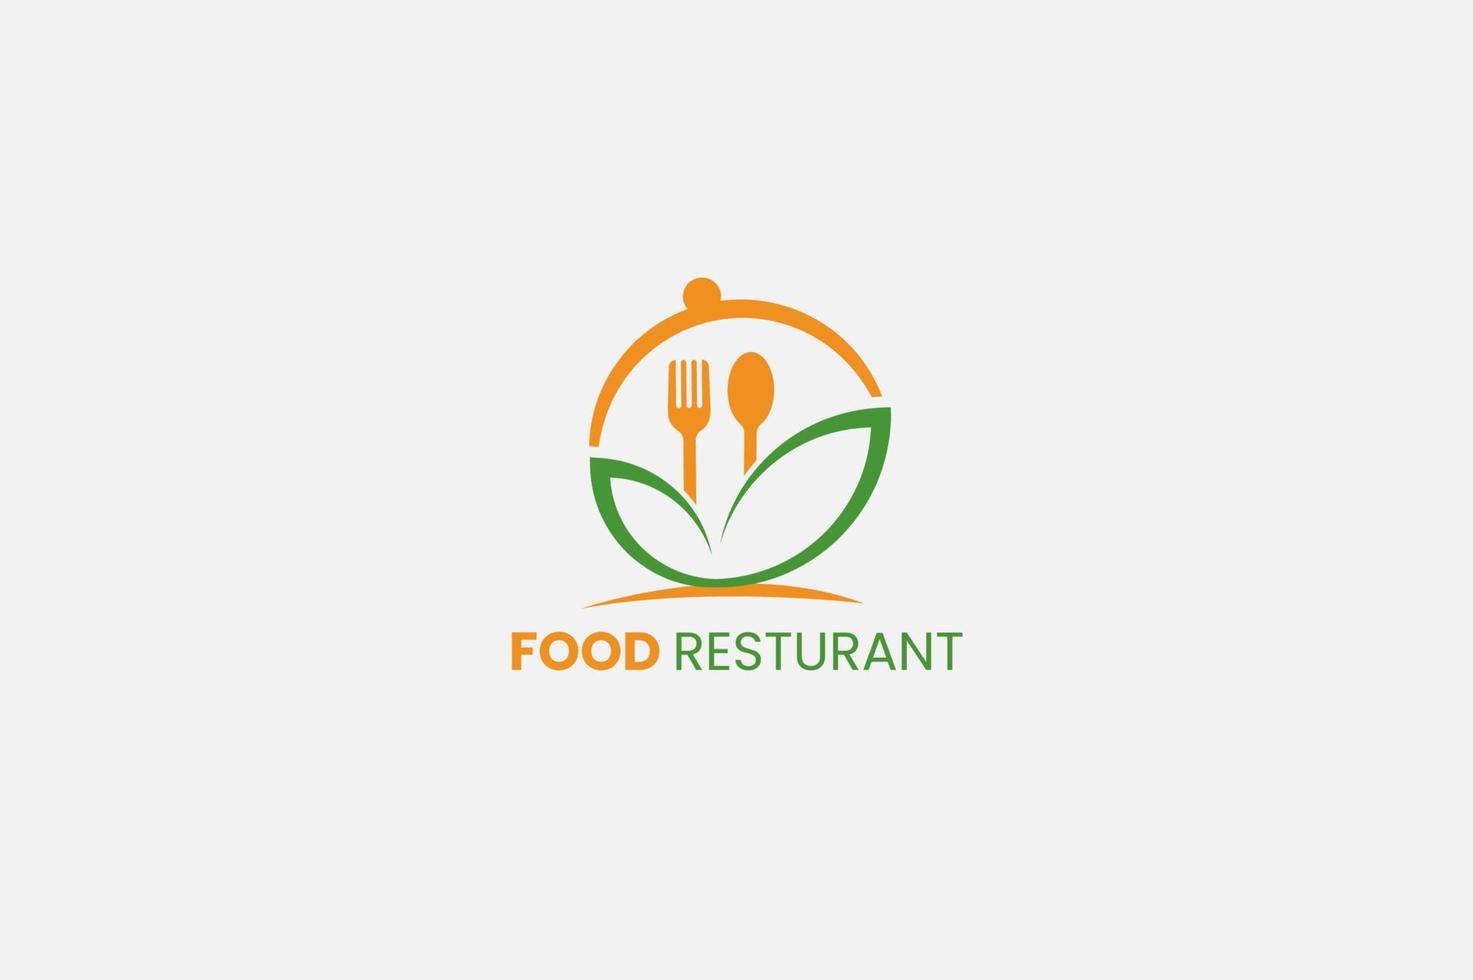 Comida logotipo, restaurante logotipo com colheres, folha, rápido Serviços logotipo modelos. vetor